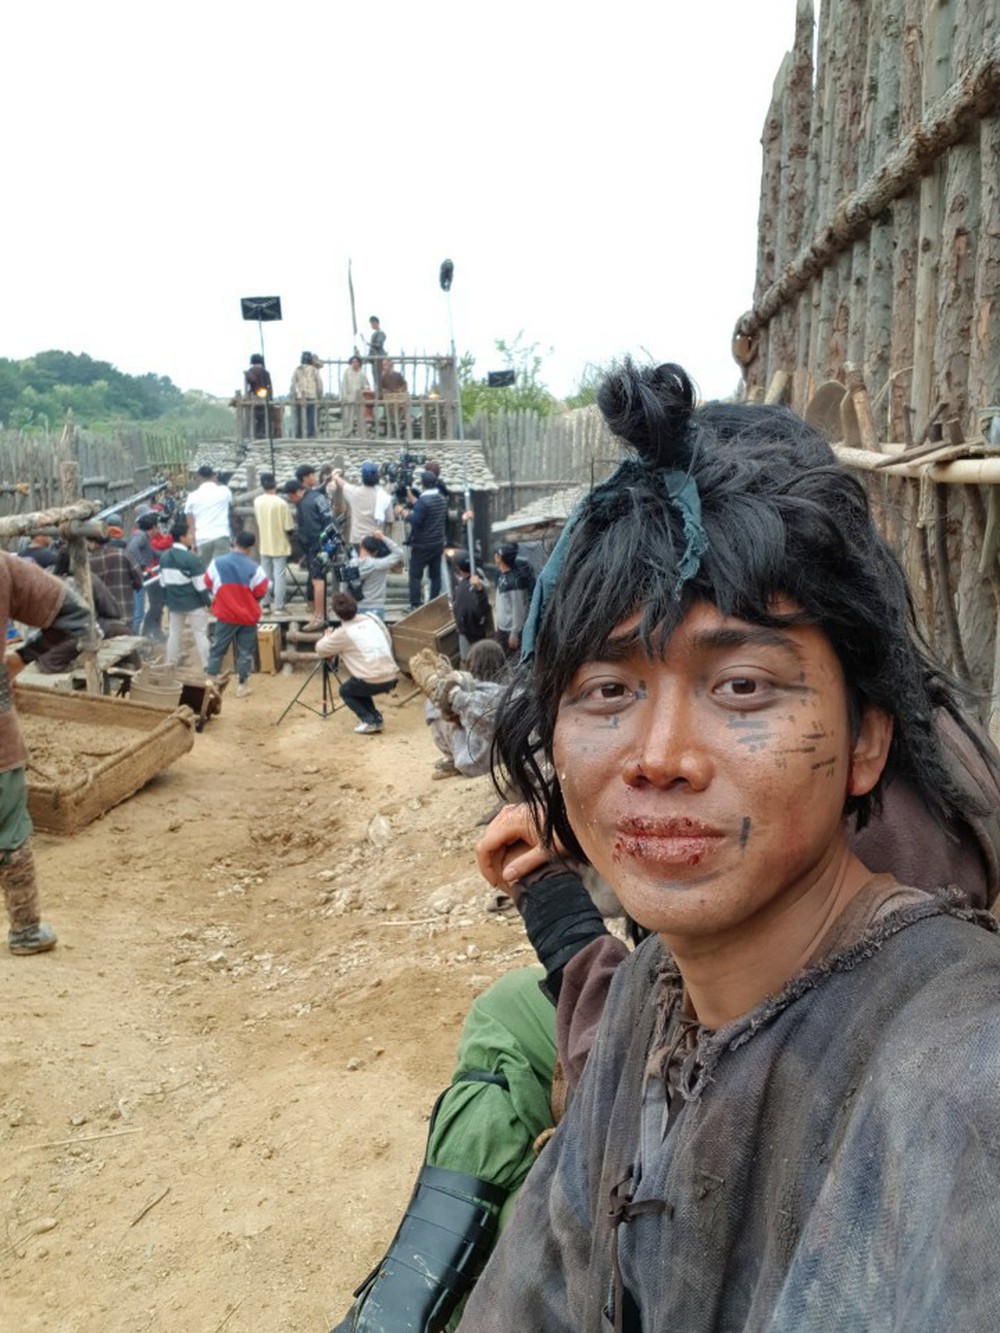 HOT: Diễn viên người Việt đóng trong bom tấn Arthdal tiết lộ chi tiết đặc biệt về Song Joong Ki và tin đồn ngoại tình với bạn diễn trên phim trường - Ảnh 5.